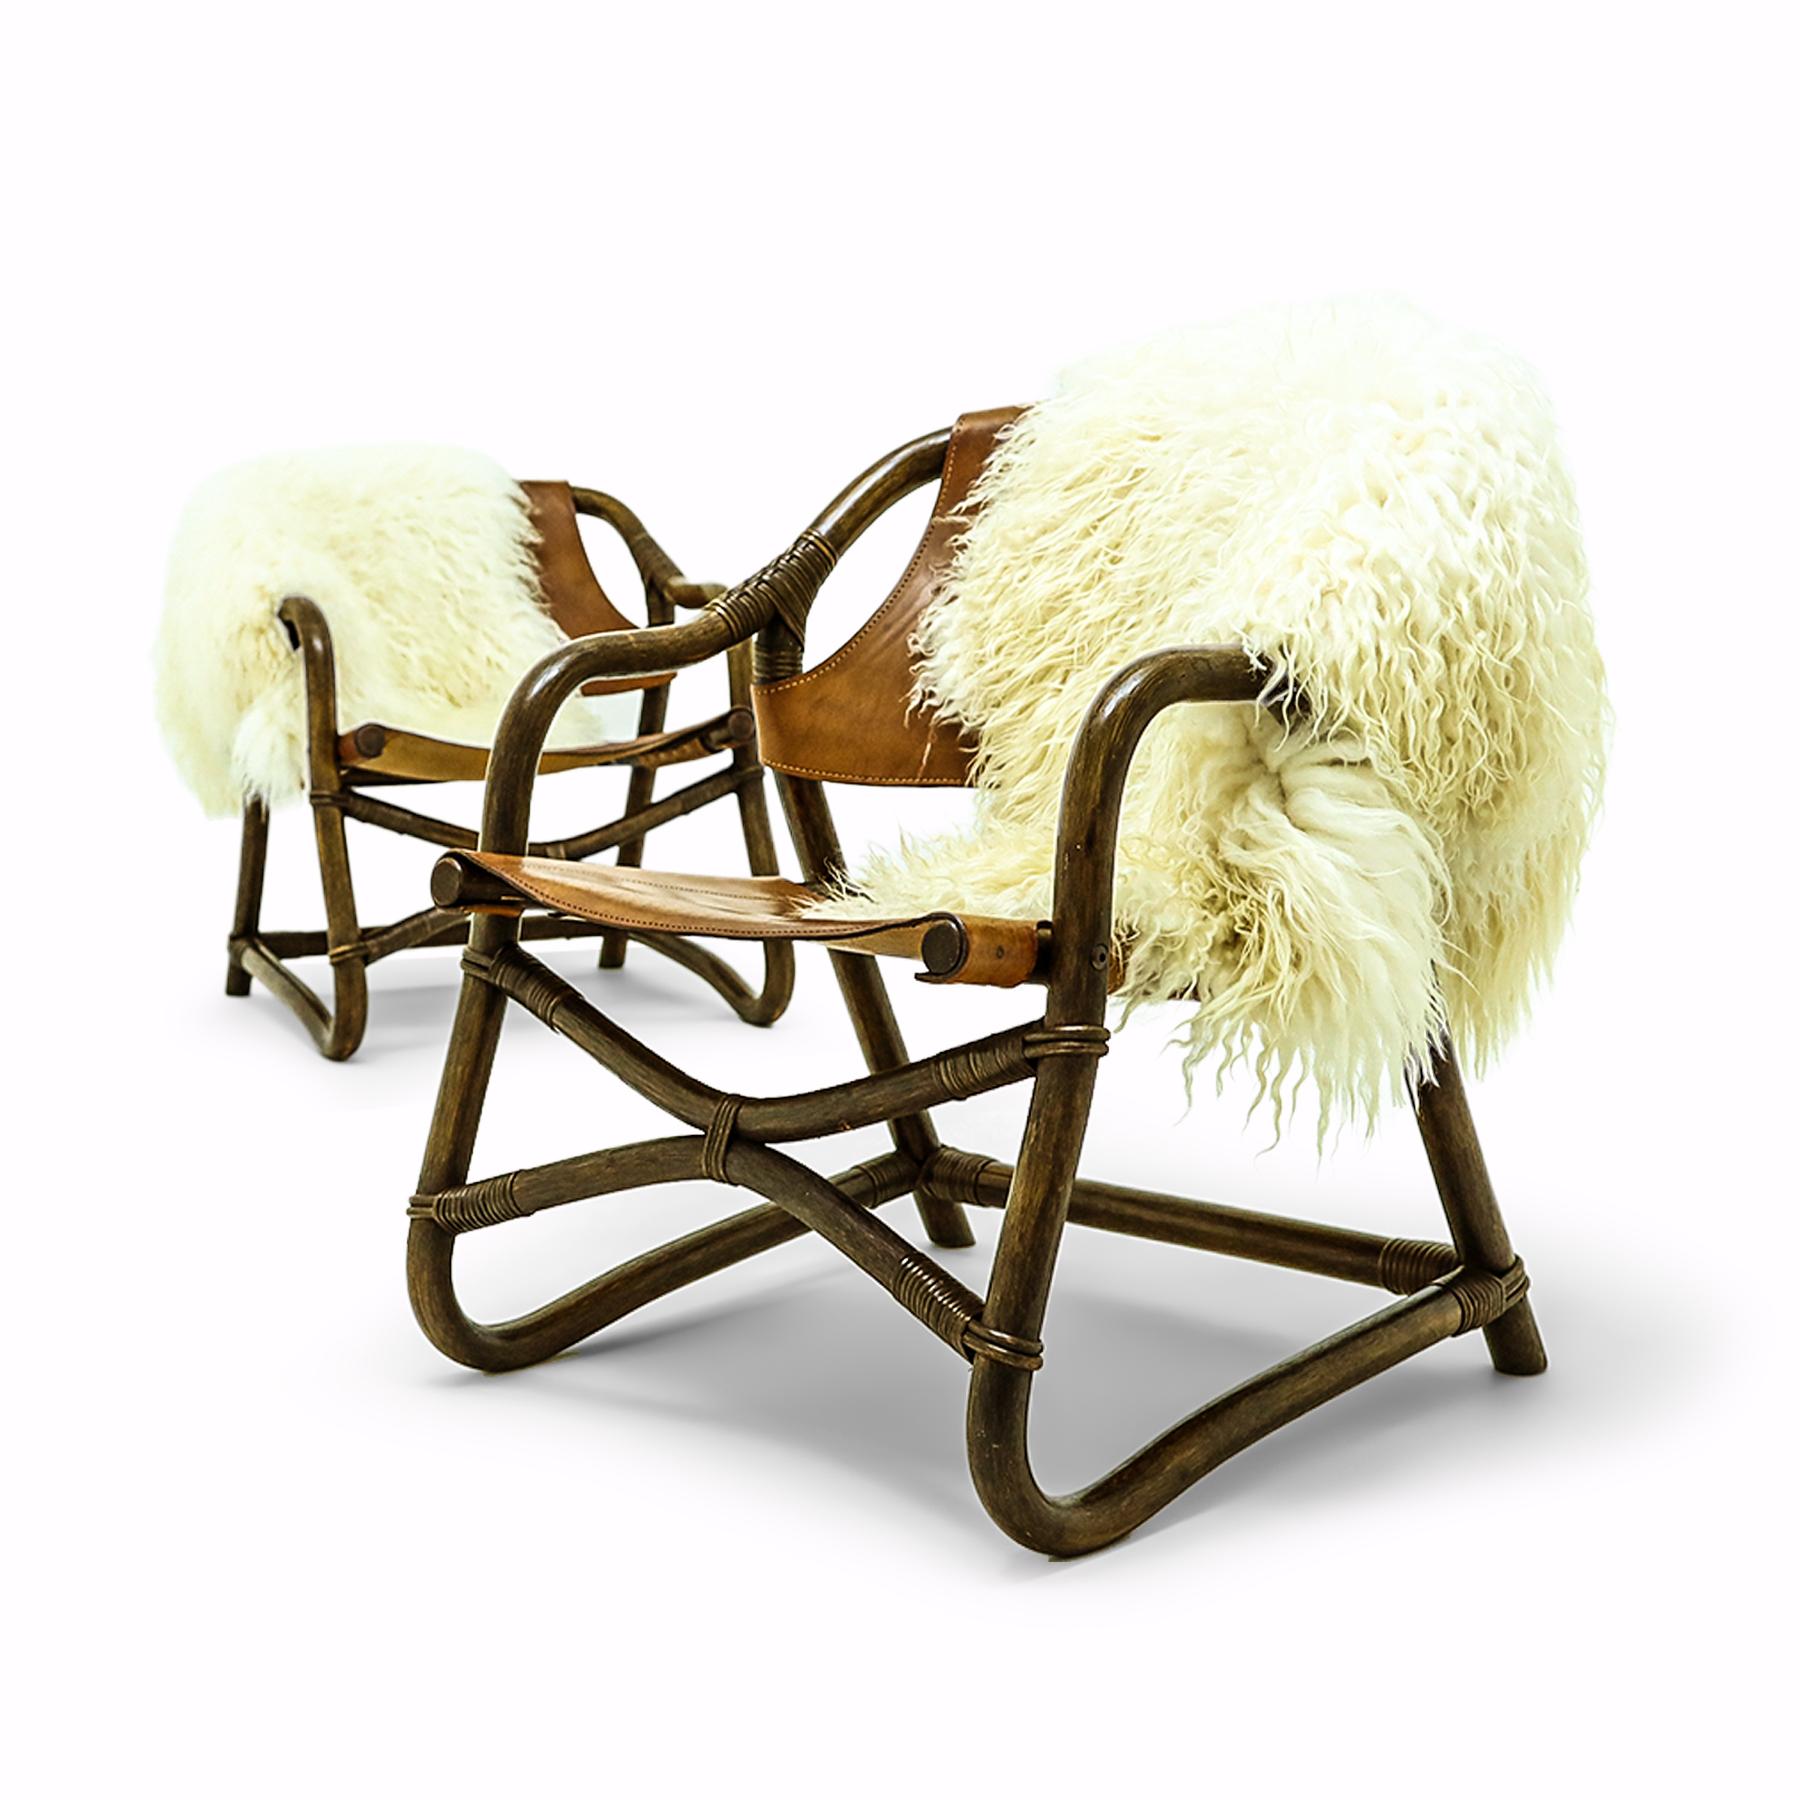 Willkommen in Walhalla! Dieses Stuhlpaar im nordischen Stil verfügt über dicke Ledersitze und -rückenlehnen auf gebundenen Rohrstützen mit langhaarigen isländischen Schafsfelldecken - beide Decken sind im Preis des Sets enthalten. 

Diese Stühle